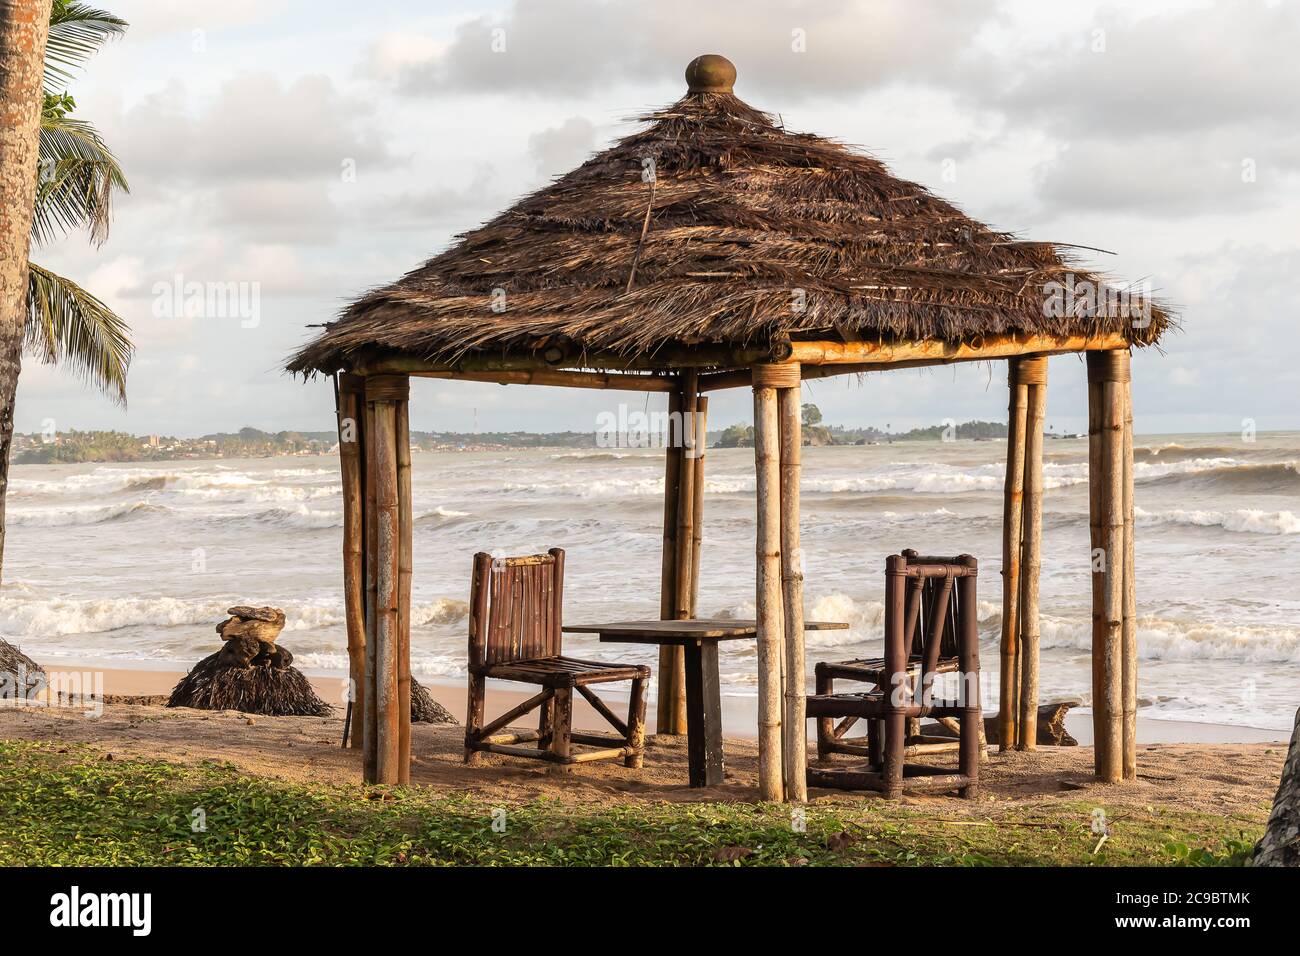 Afrika leerer Strand mit Bambusstühlen und Reetdach als Schutz vor Regen und Sonne, der Teller ist Axim Ghana Westafrika Stockfoto